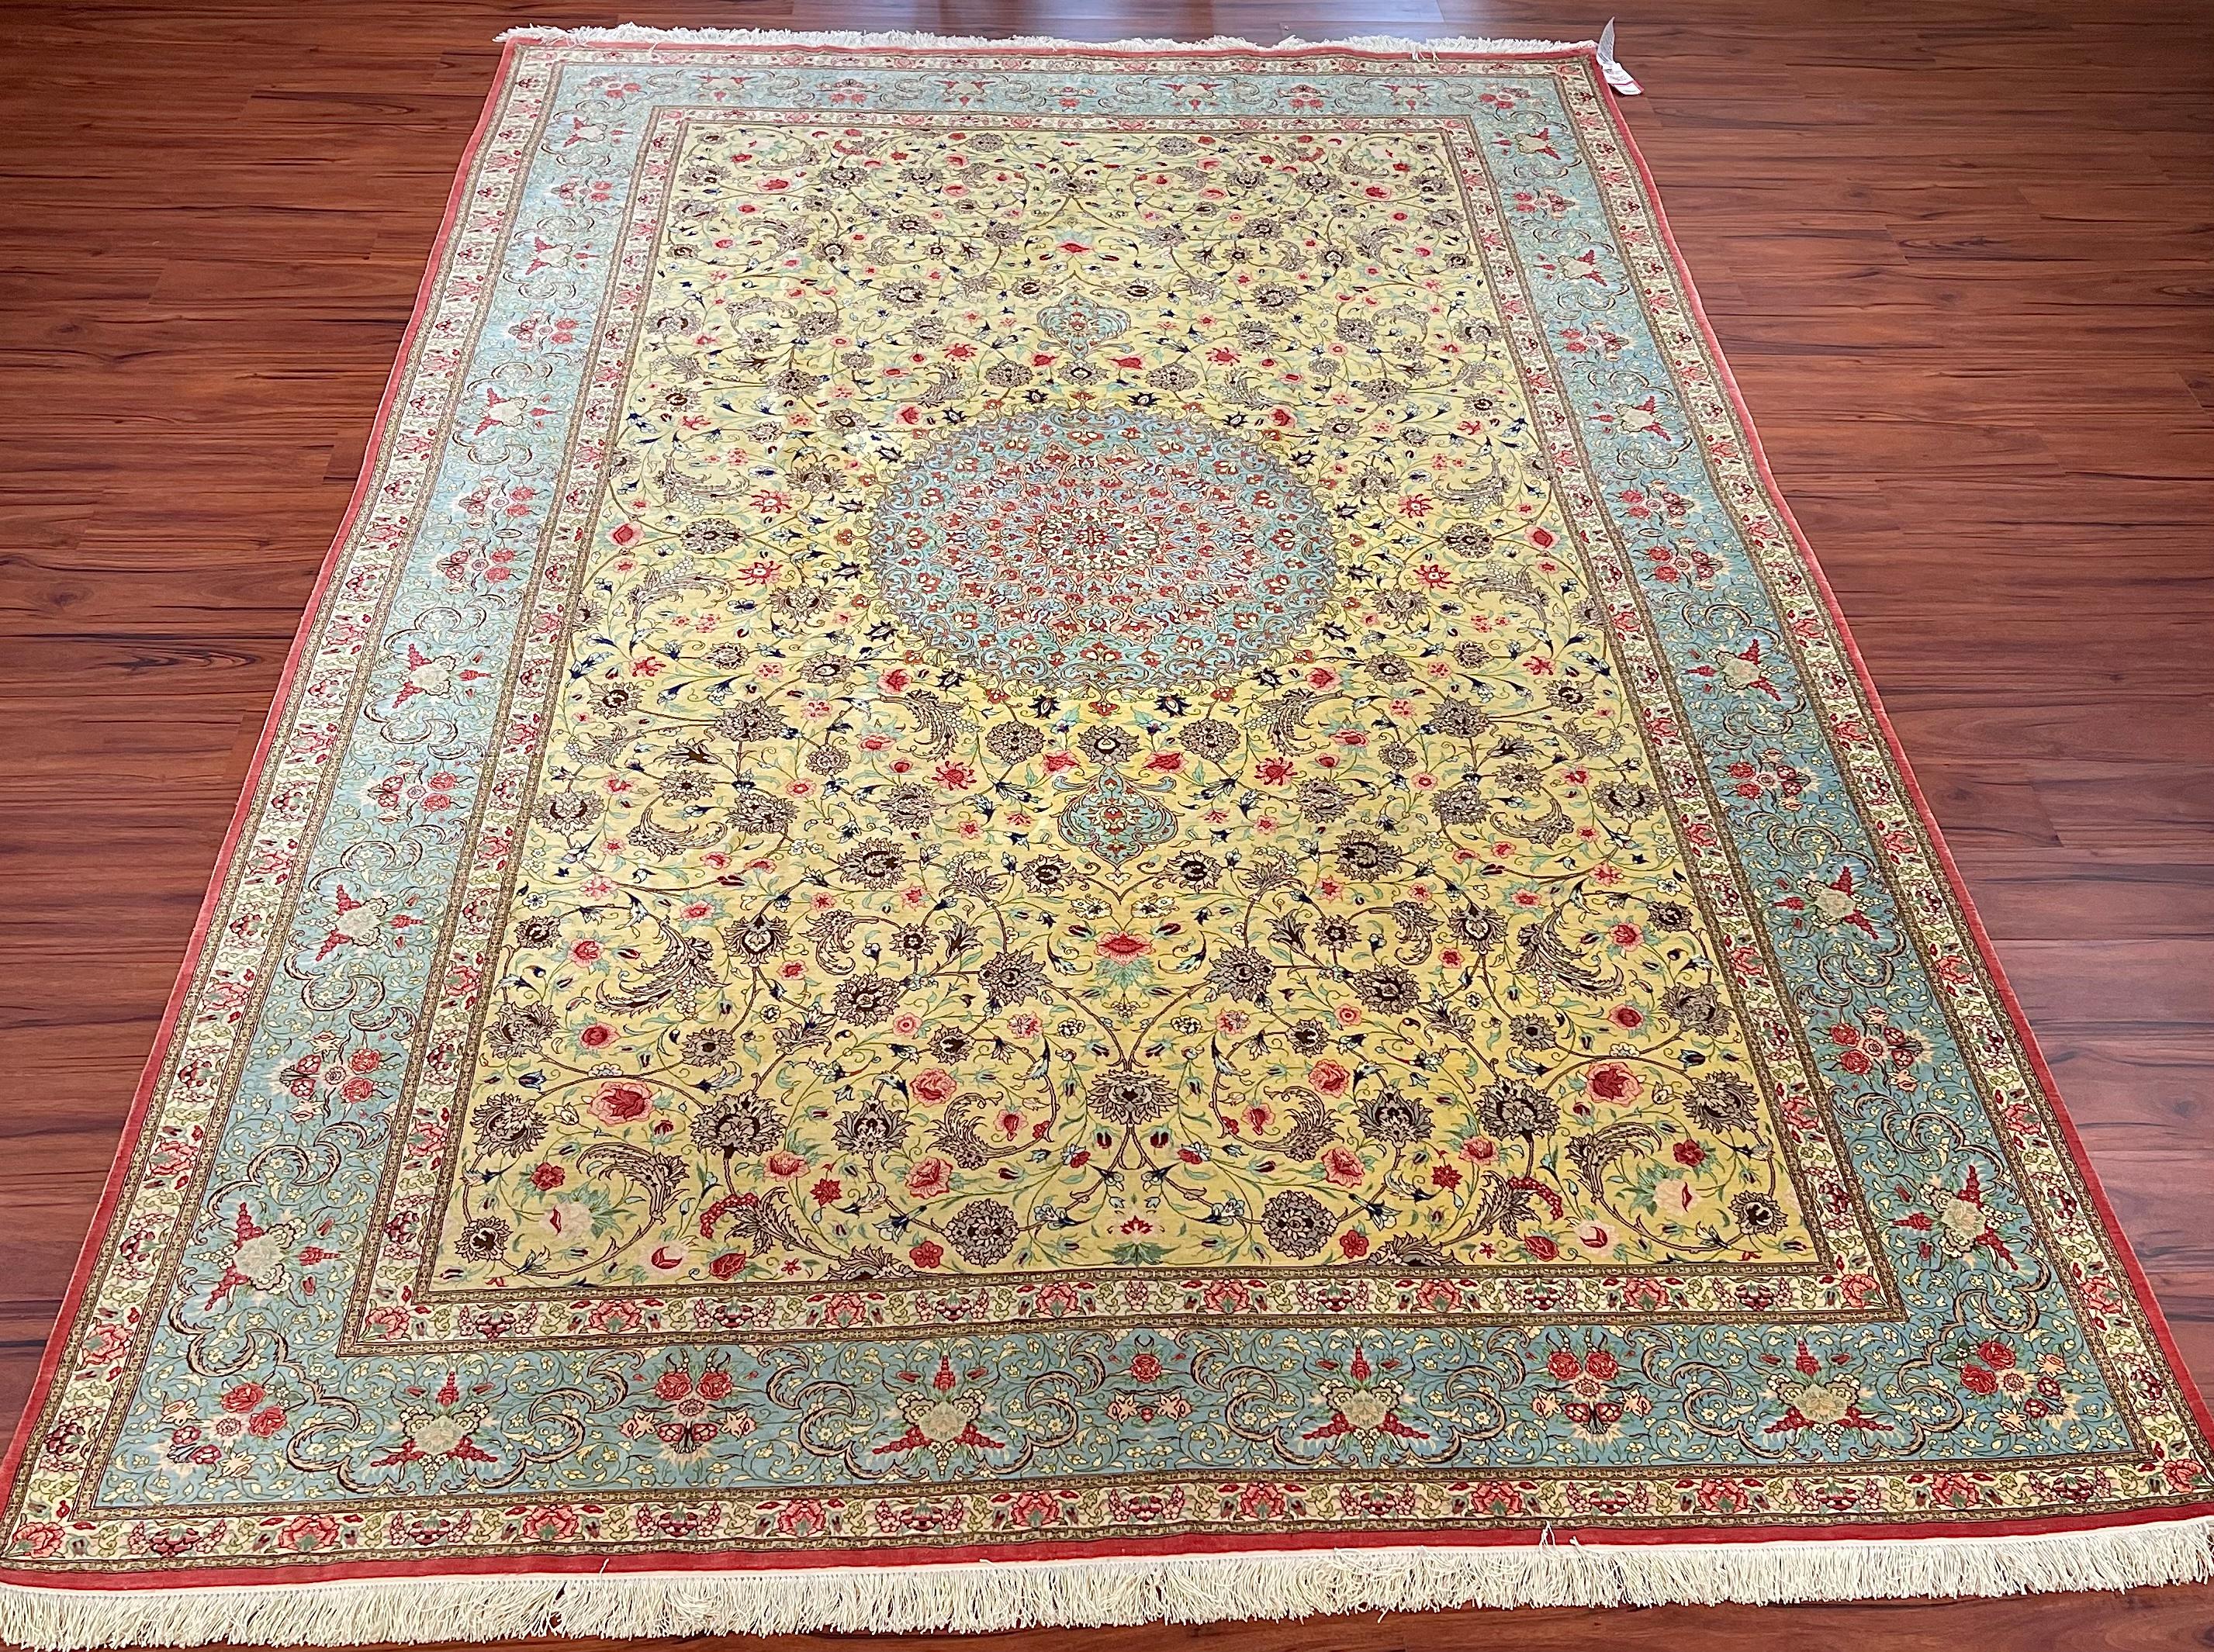 Un superbe tapis persan Qum 100% soie. Originaire d'Iran dans les années 1980. Ce tapis est en excellent état et mesure 6ft 6in/ 10ft de long.